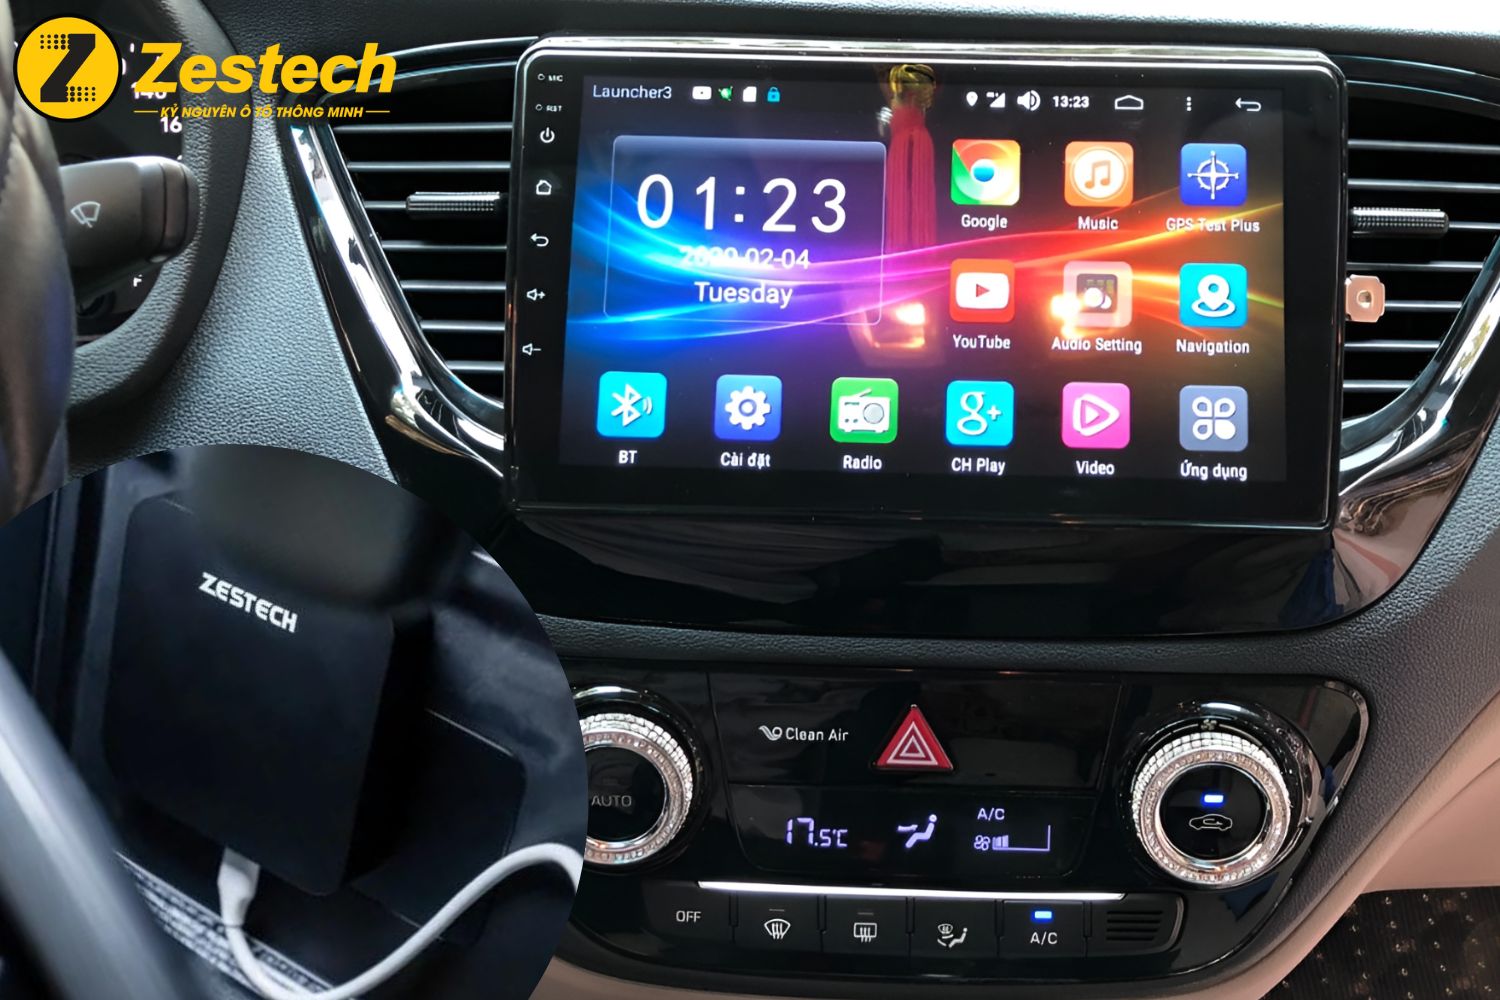 Điều khiển Android Box cho xe Hyundai Accent bằng giọng nói